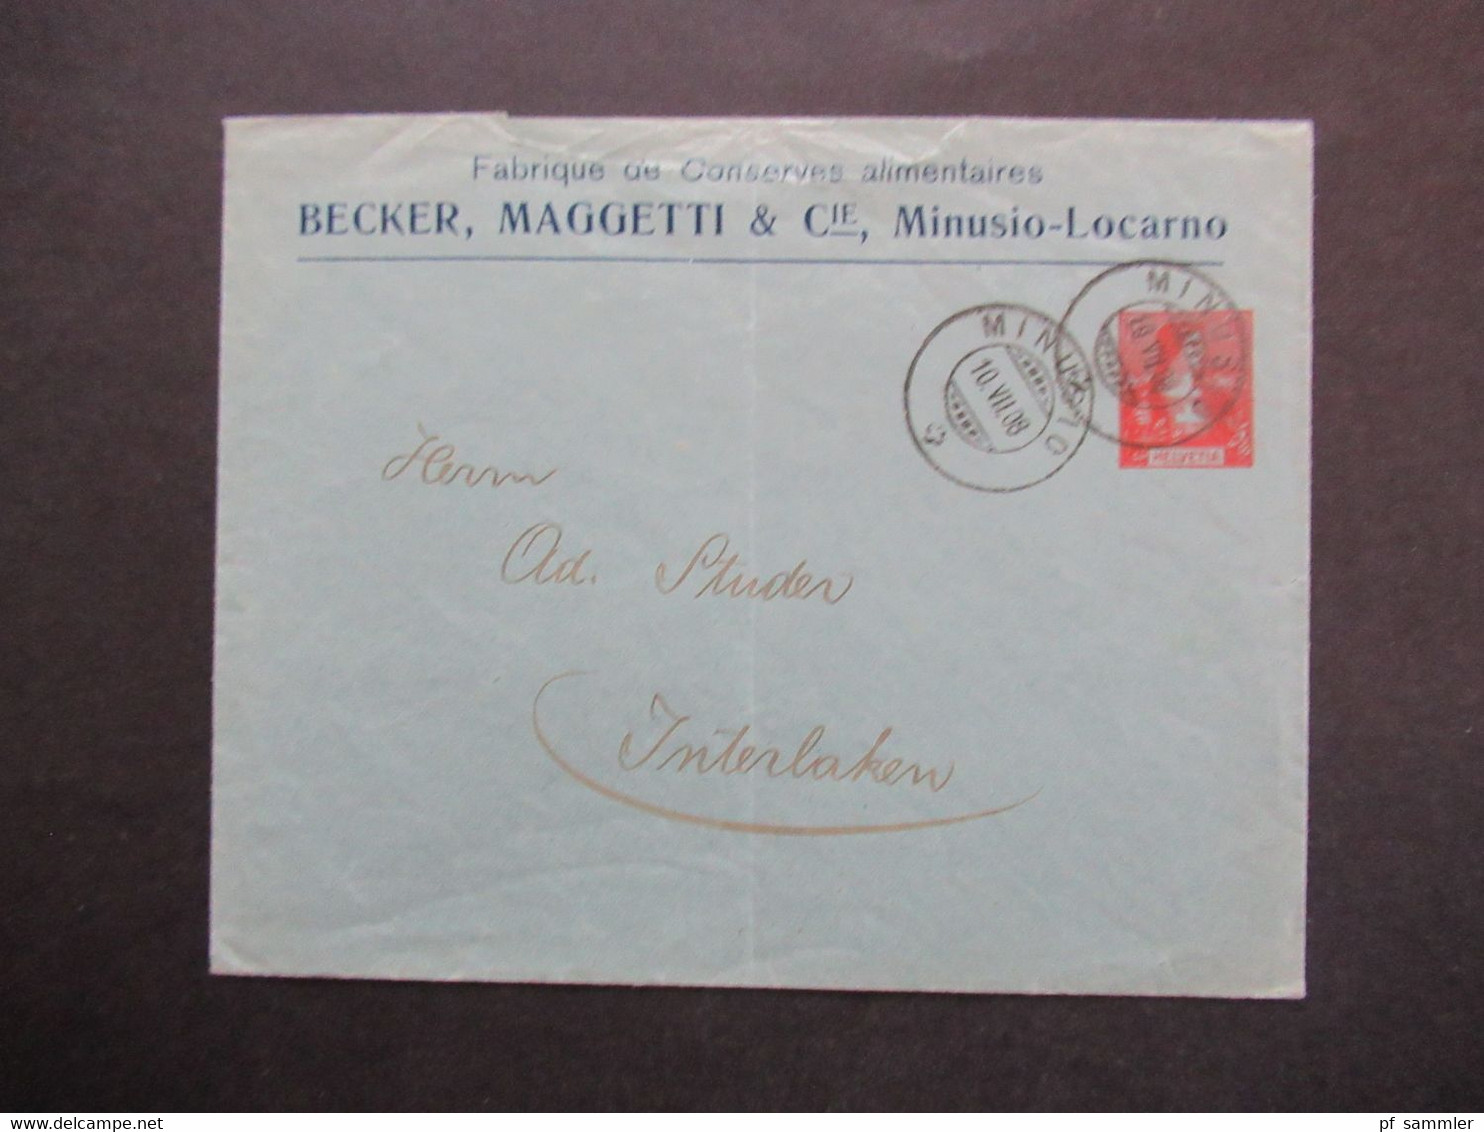 Schweiz Privatganzsache PP Umschlag Mit Firmenwerbung Becker Maggetti Minusio Locarno Confituren / Tomates En Puree - Lettres & Documents